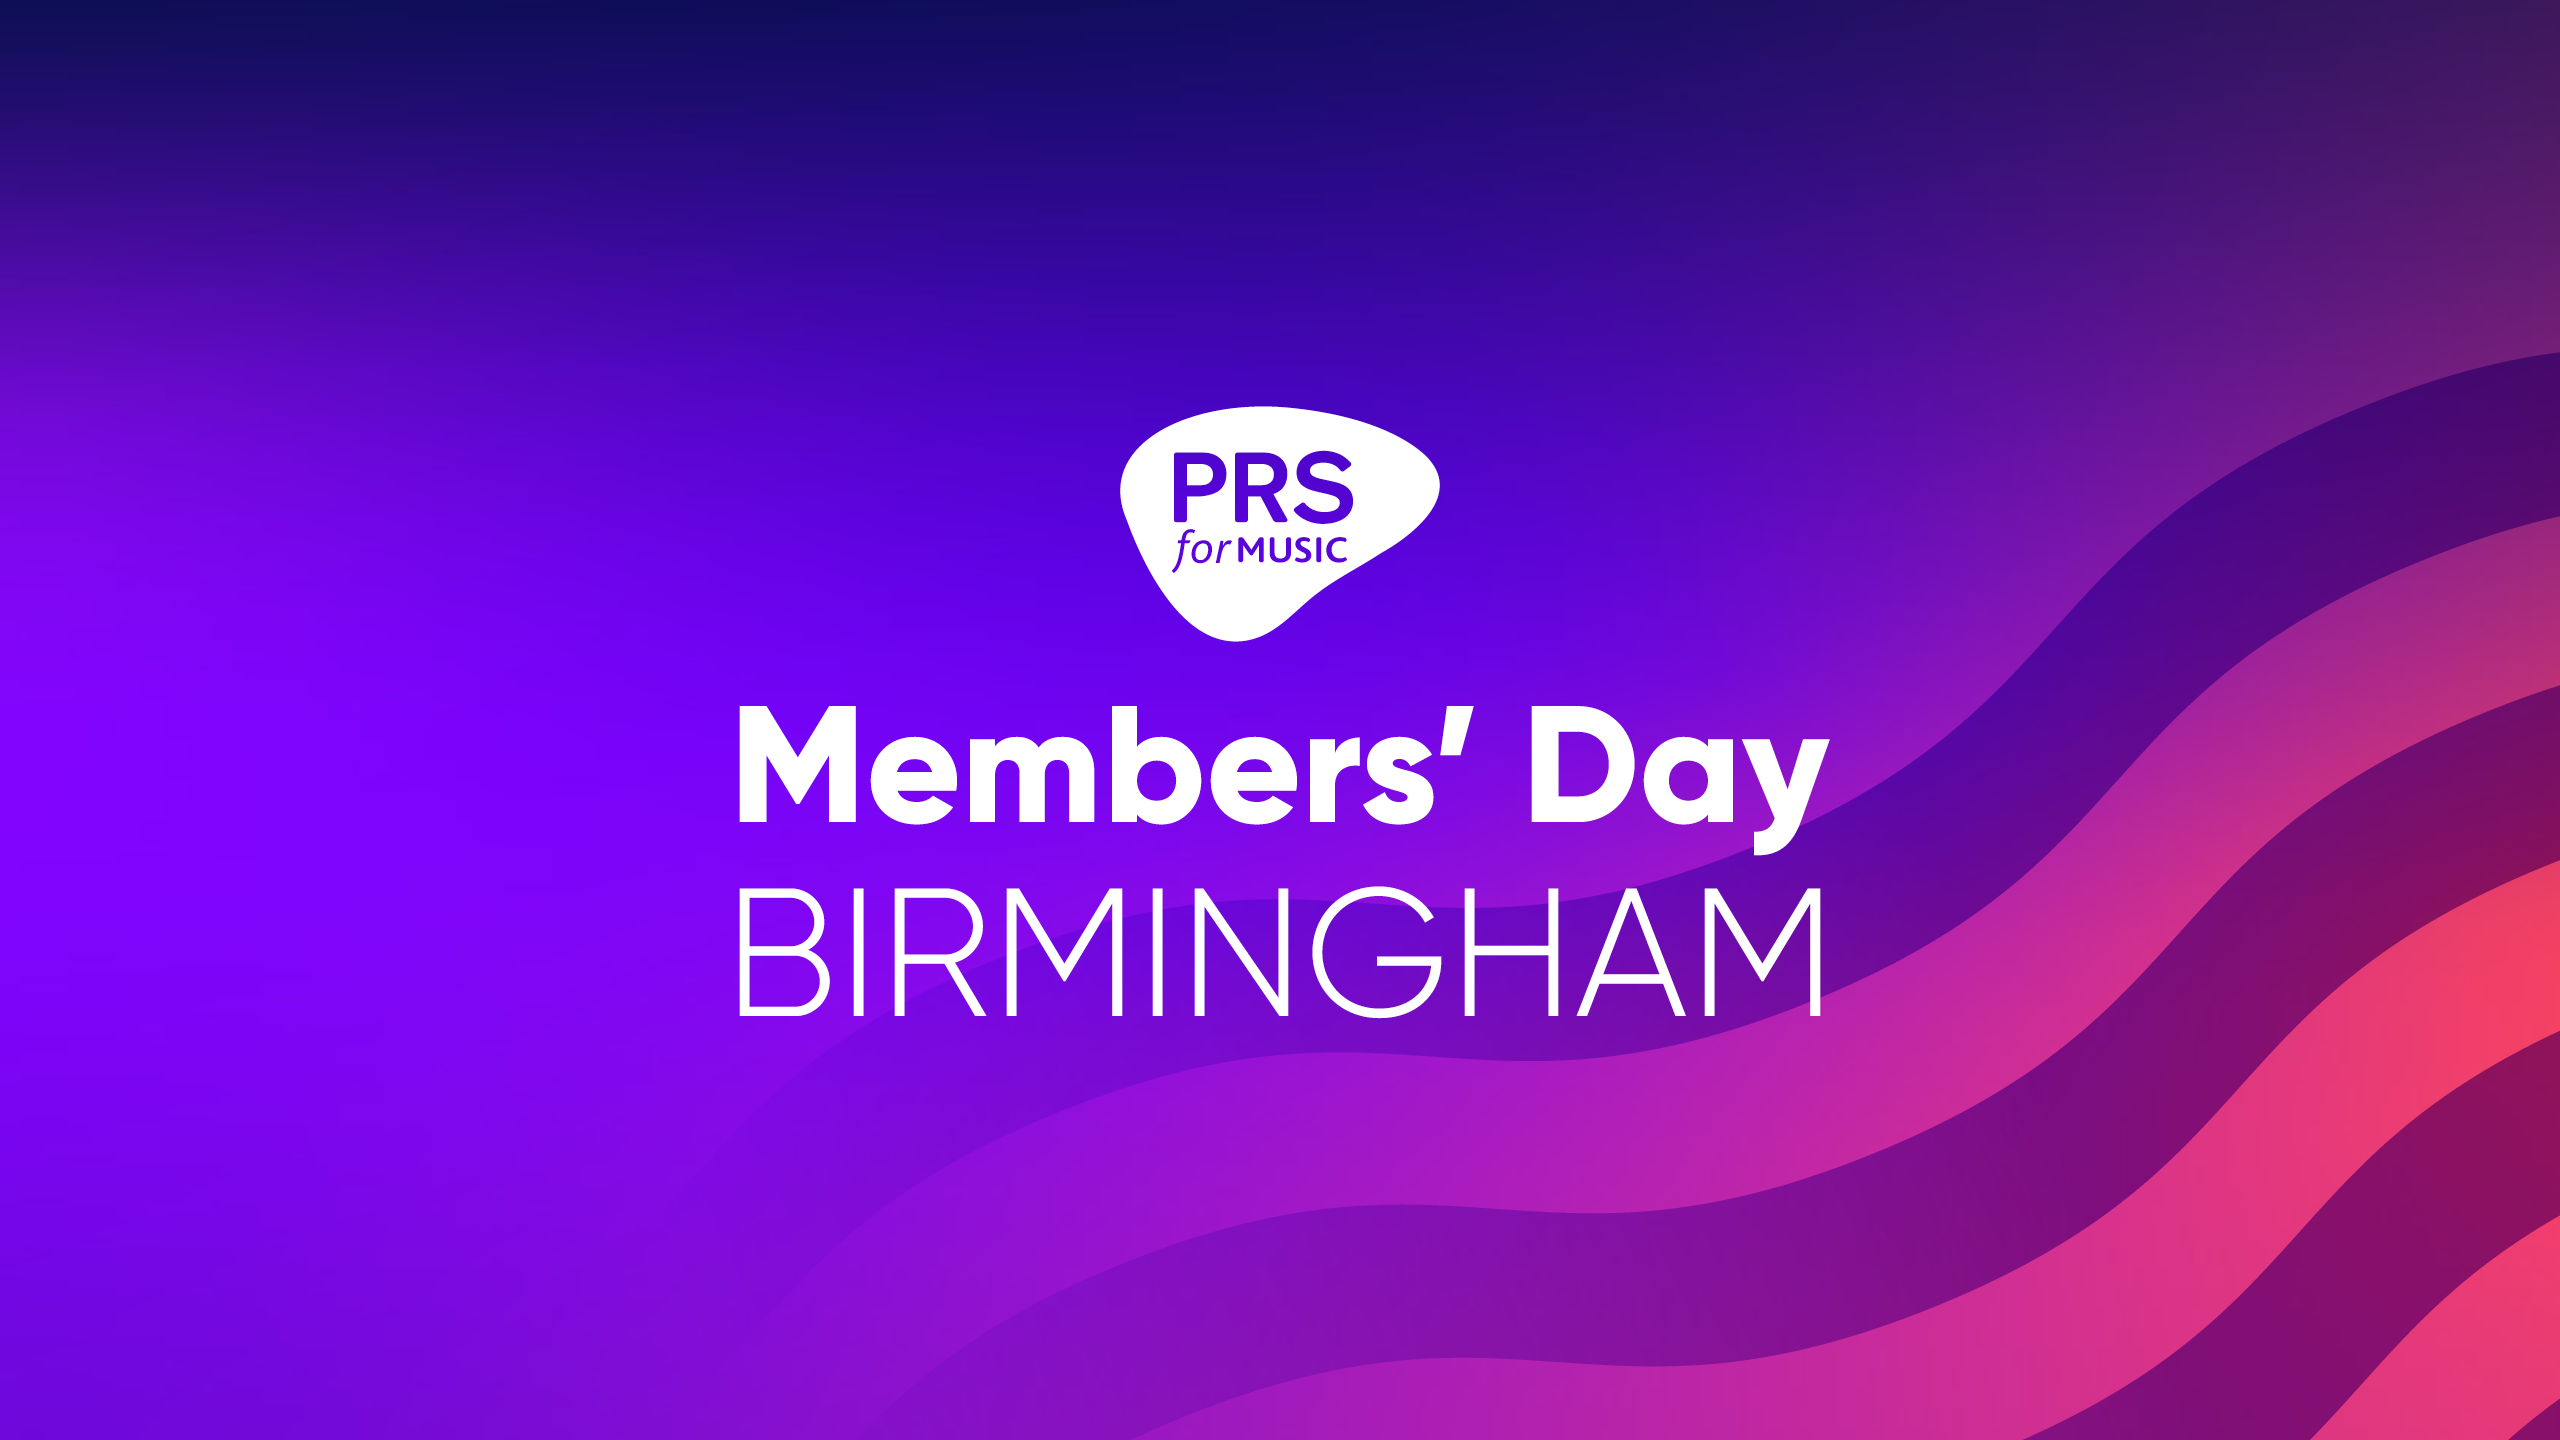 Members' Day Birmingham